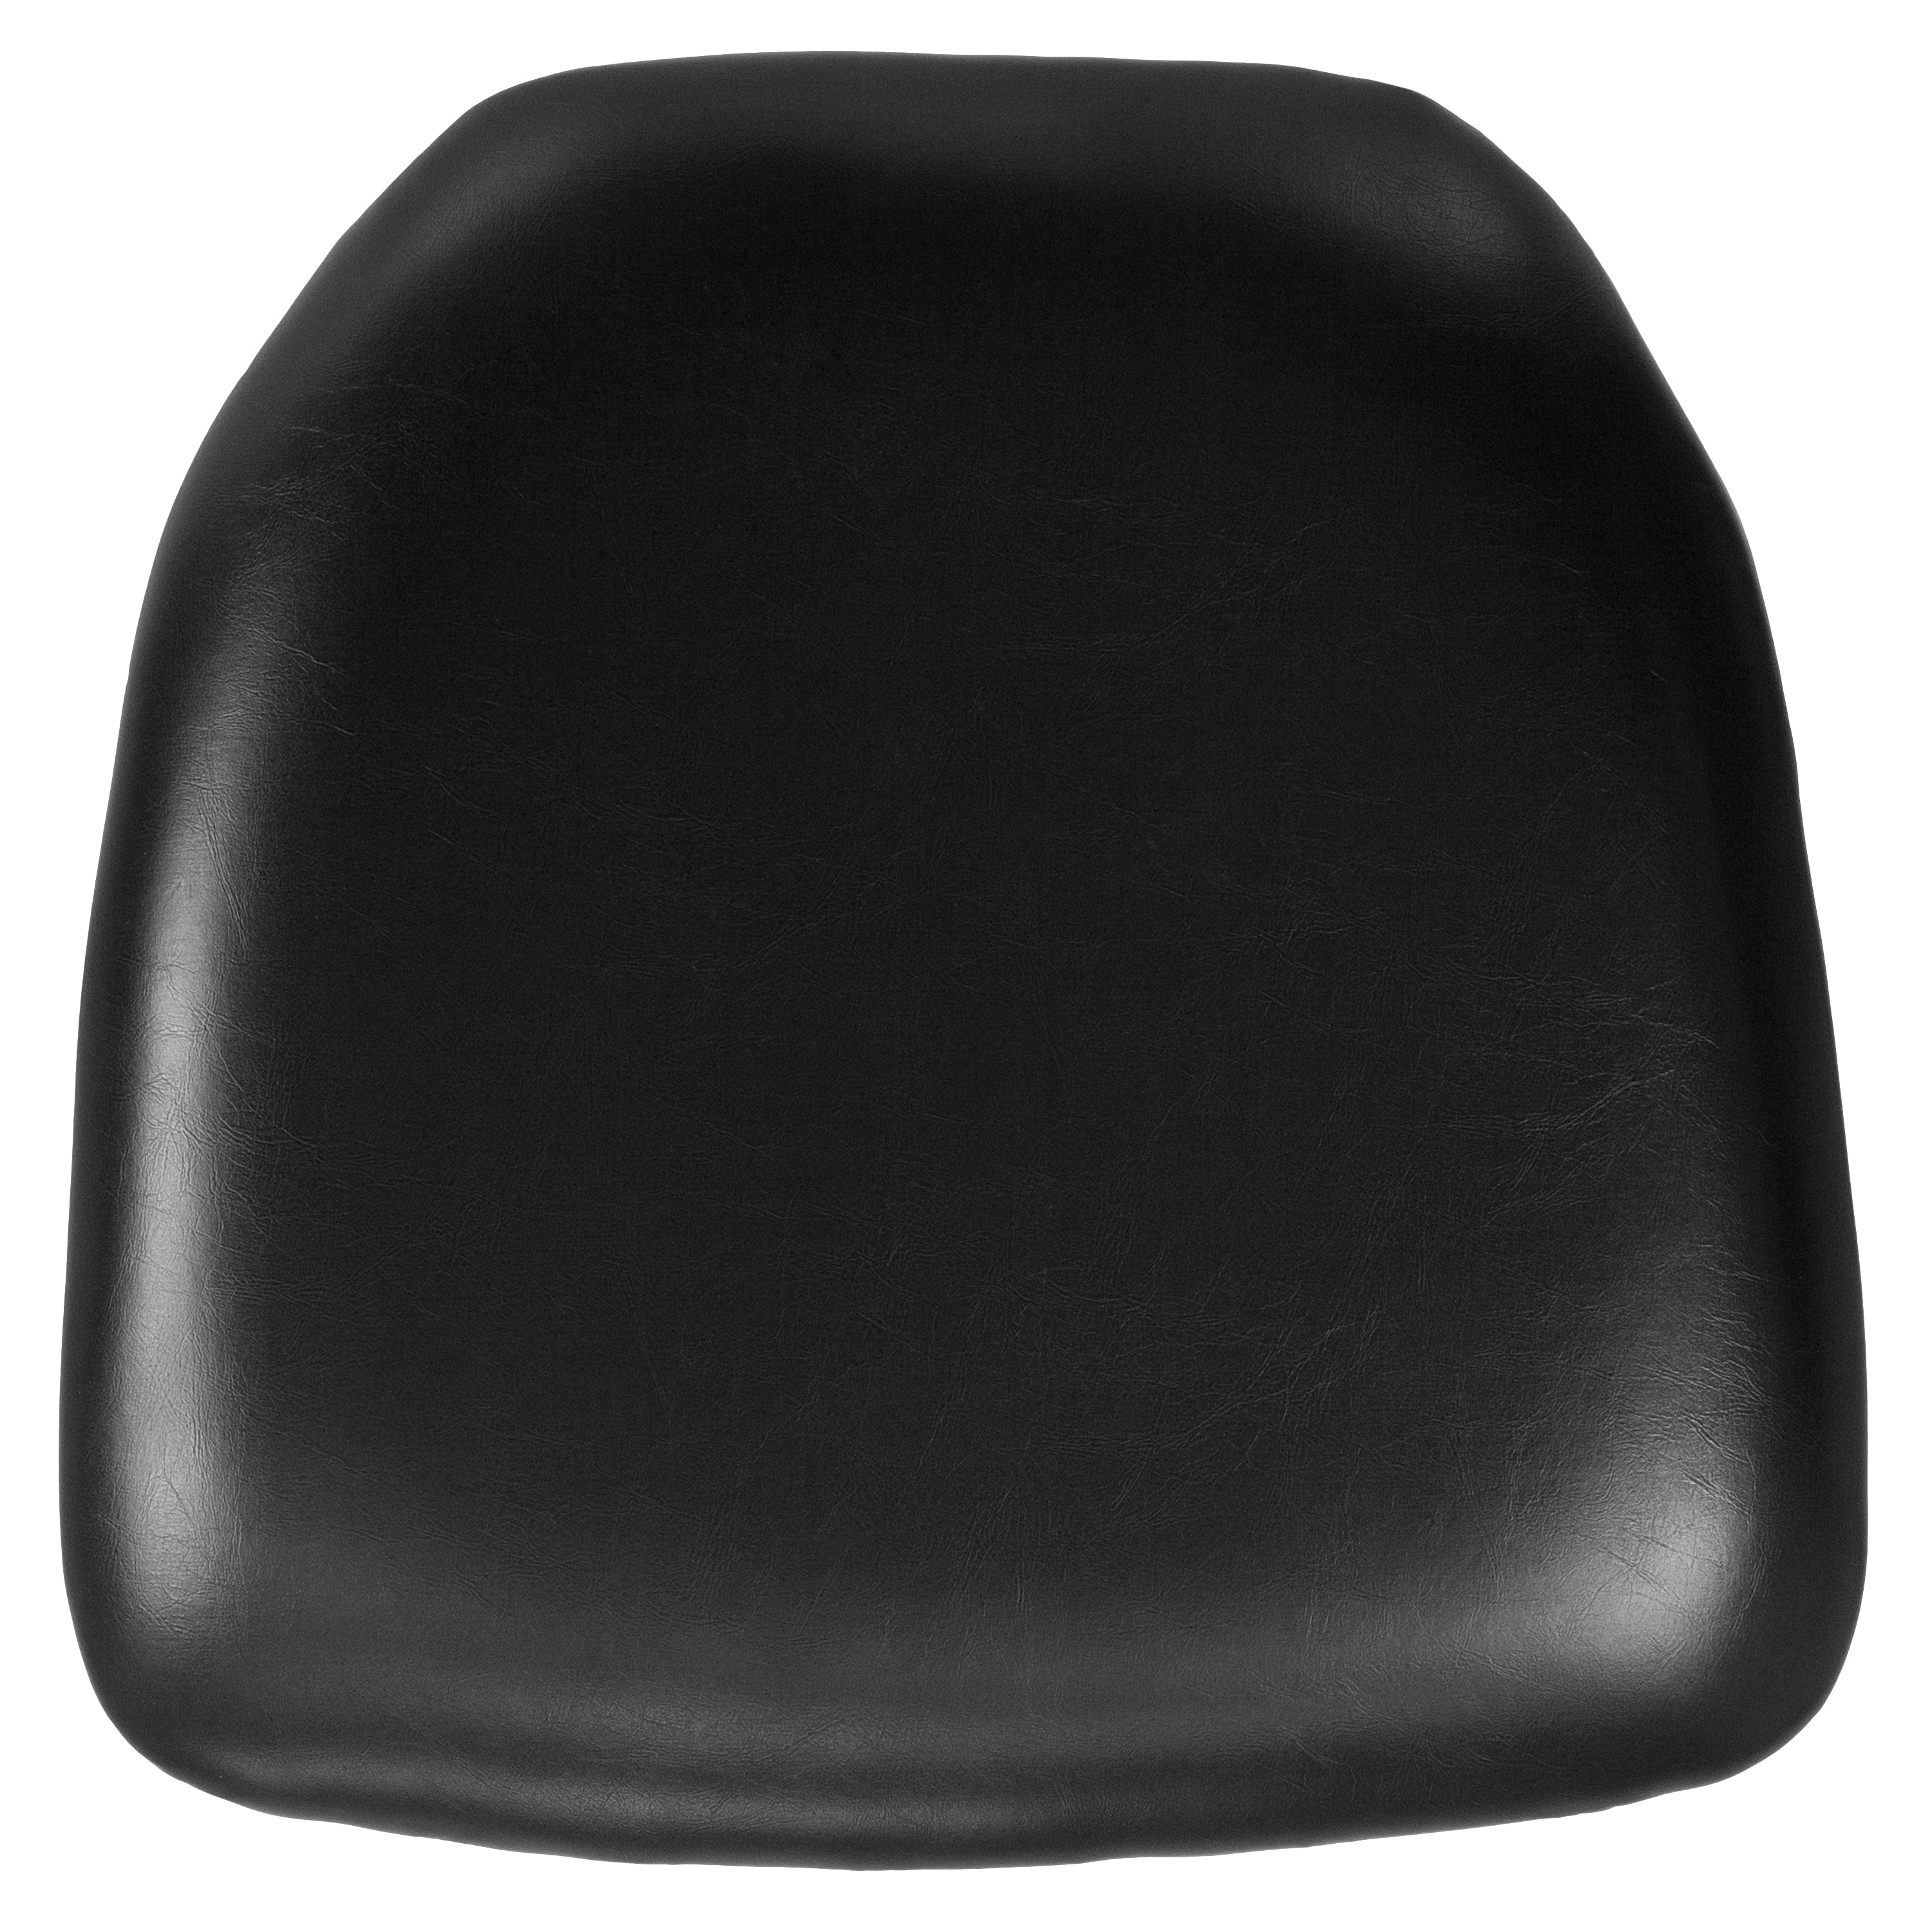 Hard Chiavari Chair Cushion-Hard Vinyl Chiavari Chair Cushion-Flash Furniture-Wall2Wall Furnishings